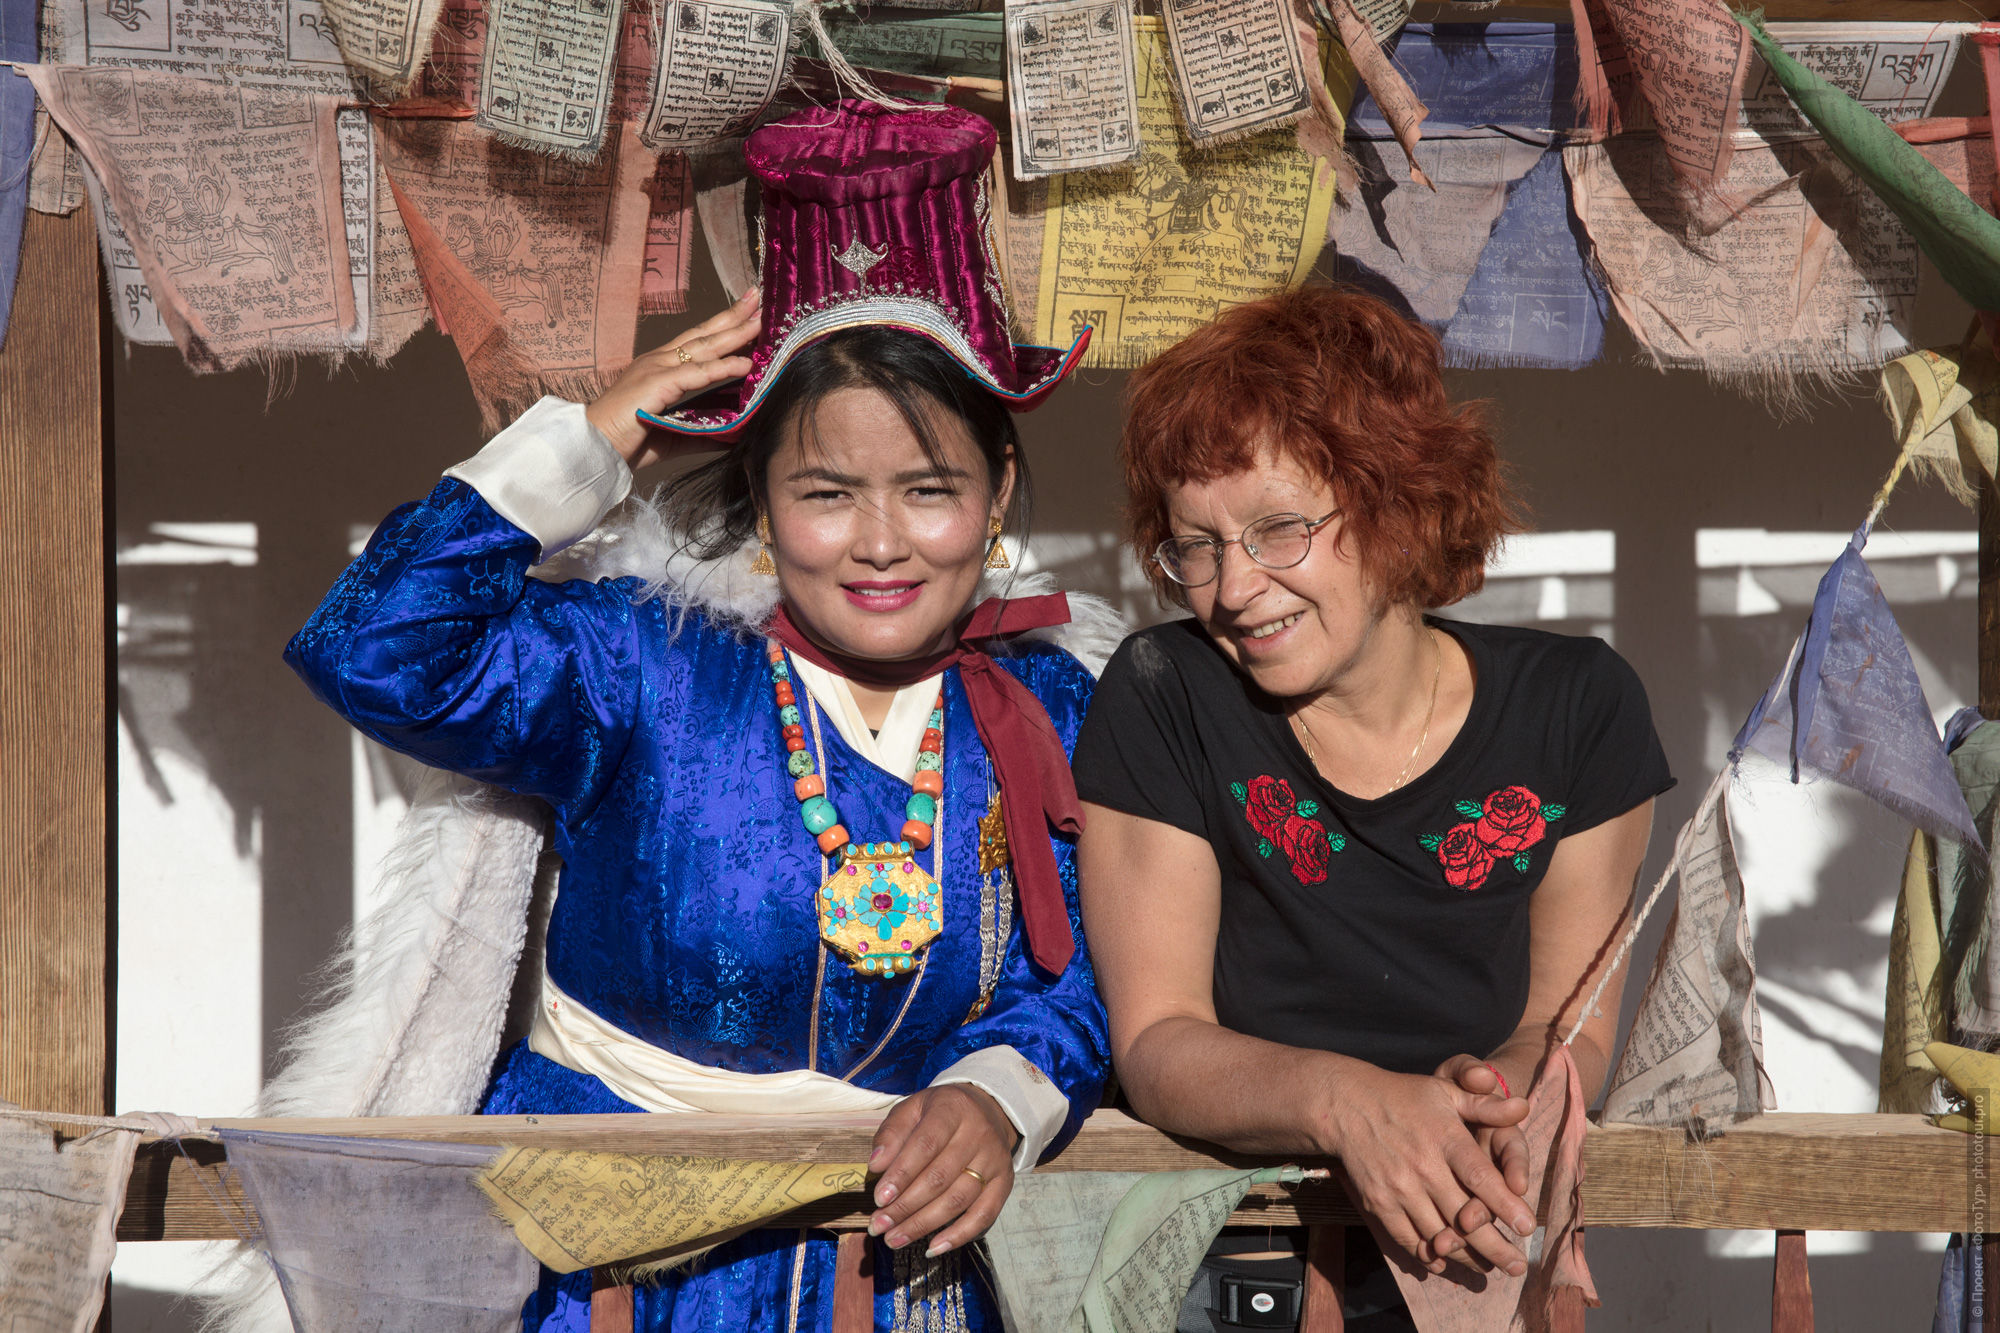 Ilona and Kakar, Ladakh women's tour, September 2019.